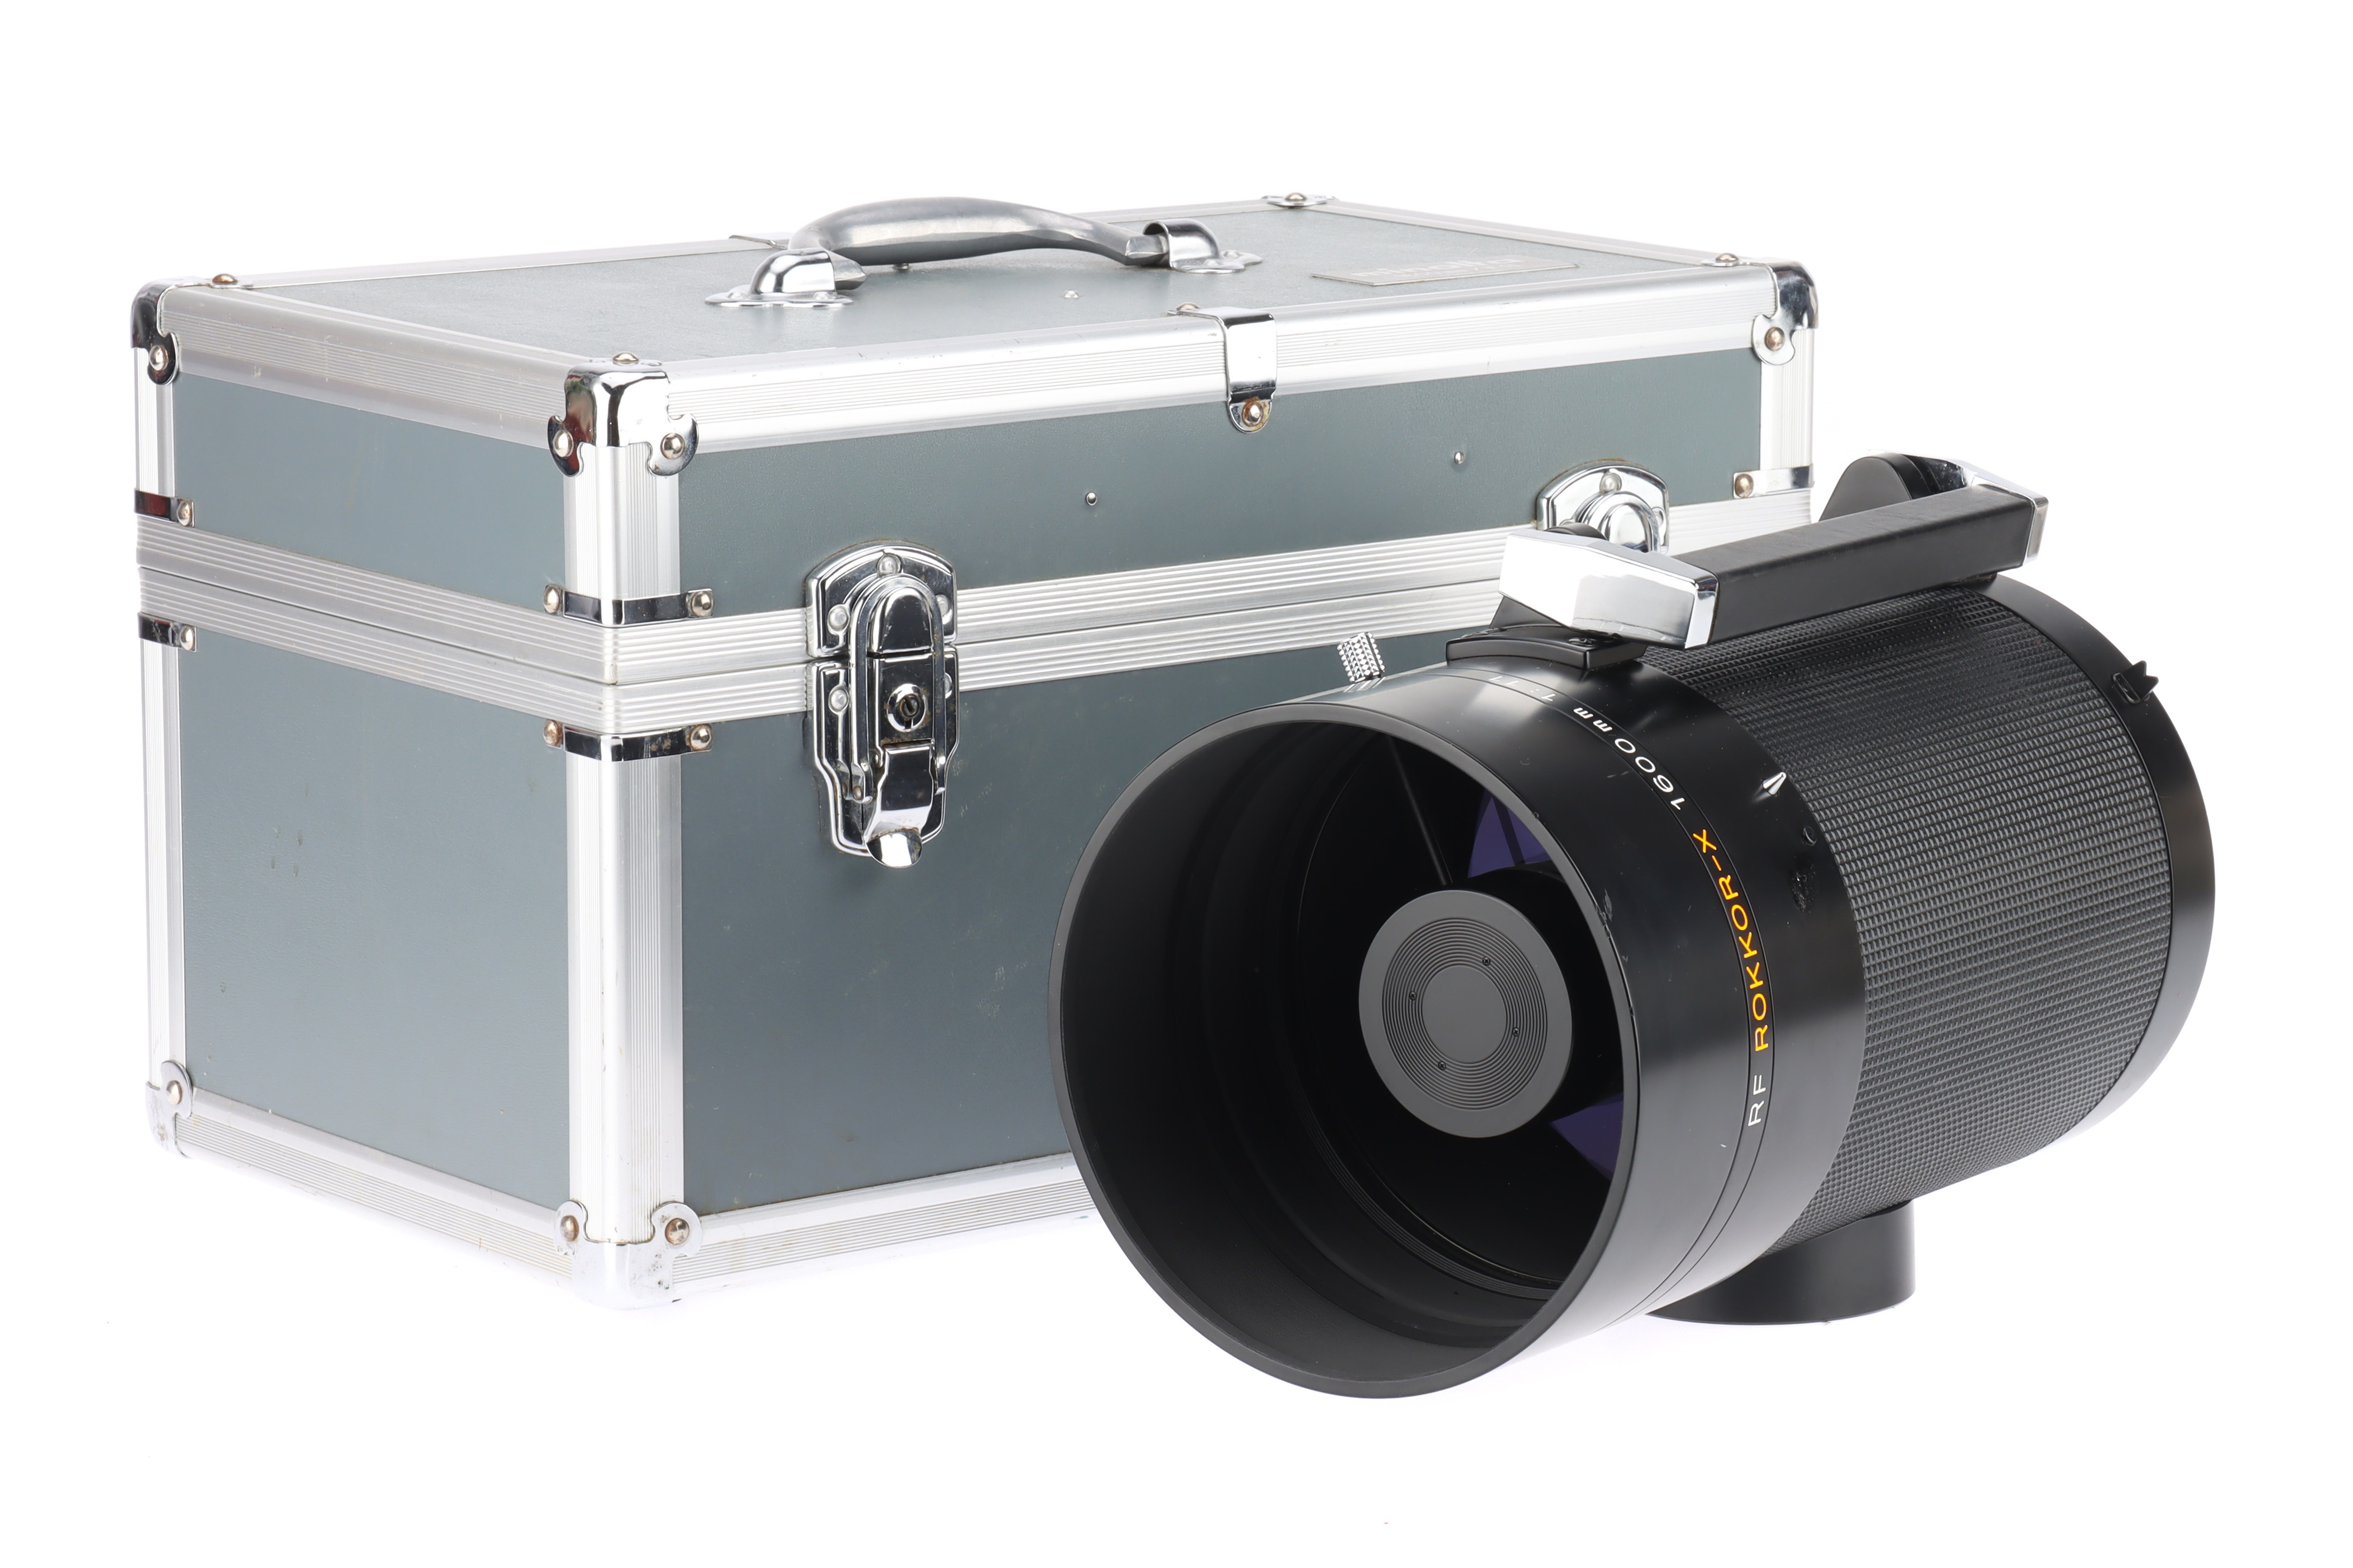 A Minolta Rokkor-X f/11 1600mm Lens,